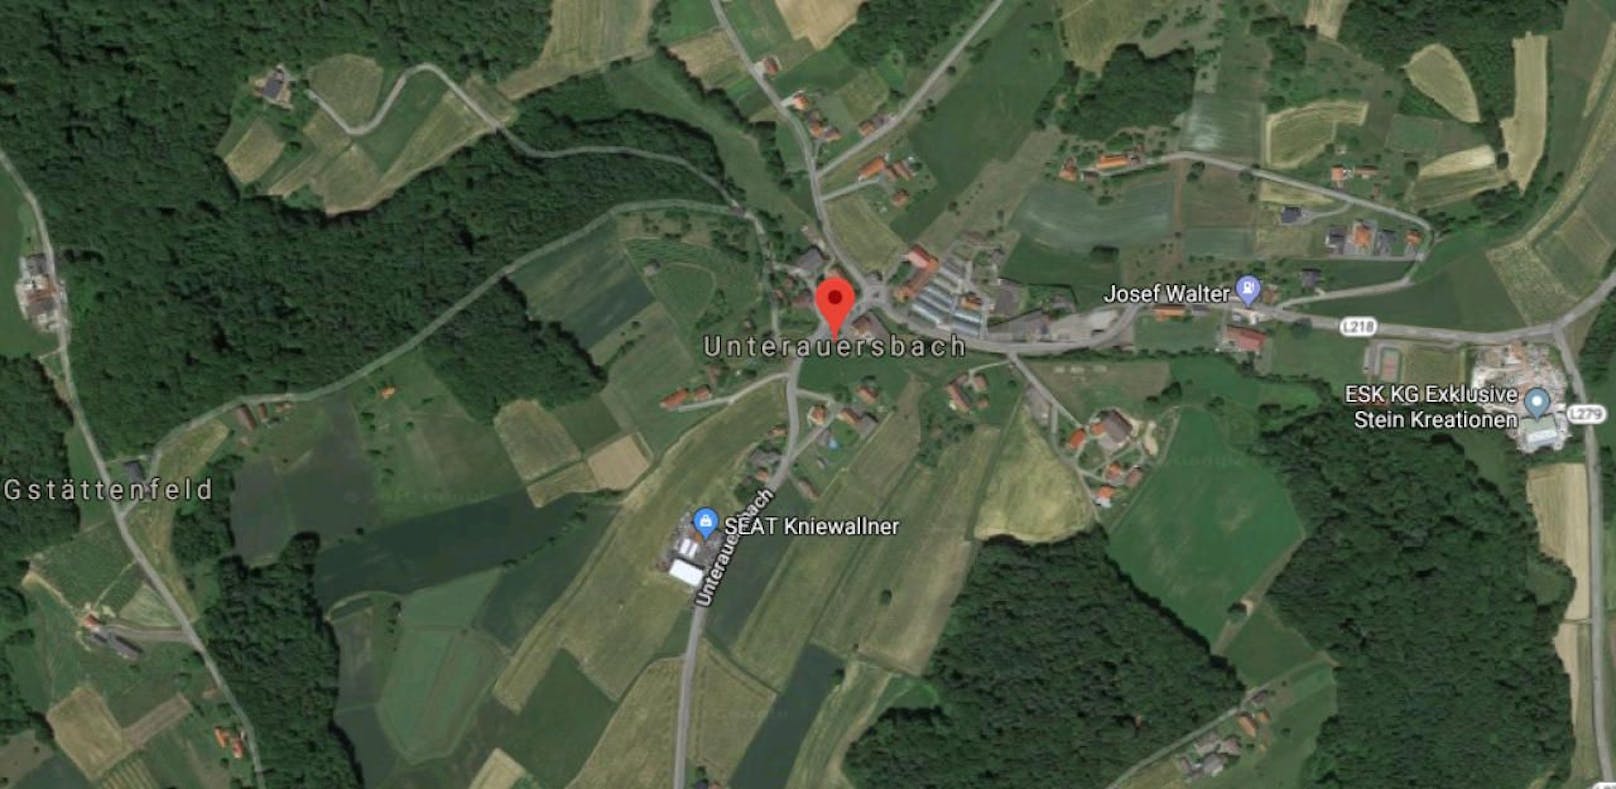 Der Vandalenakt ereignete sich im steirischen Unterauersbach